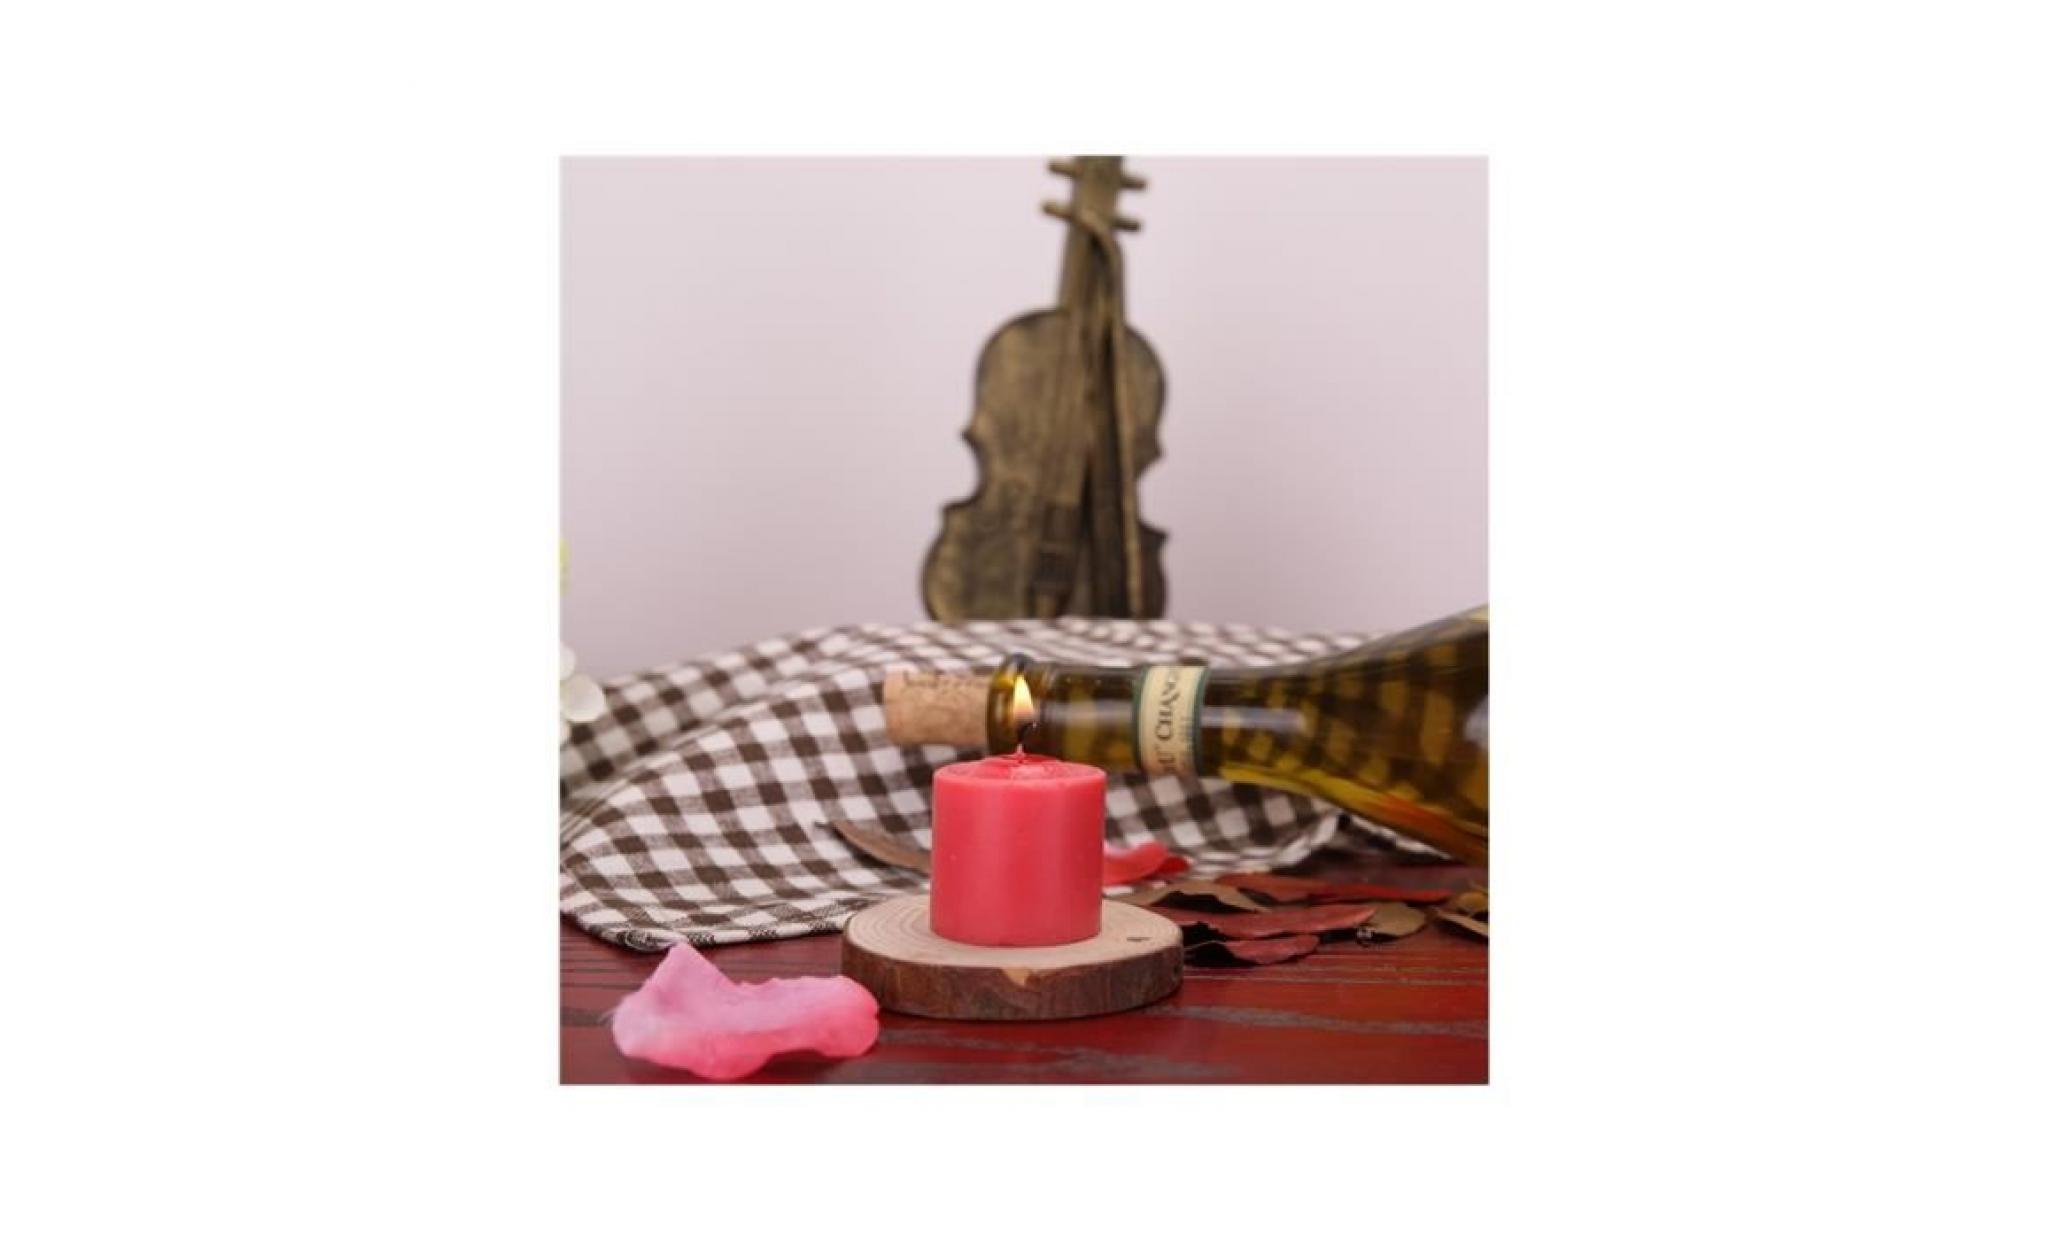 2 pcs basse température bougies romantique flirting wax dripping bougies jouets sexuels Érotiques pour les couples amoureux (rouge) pas cher